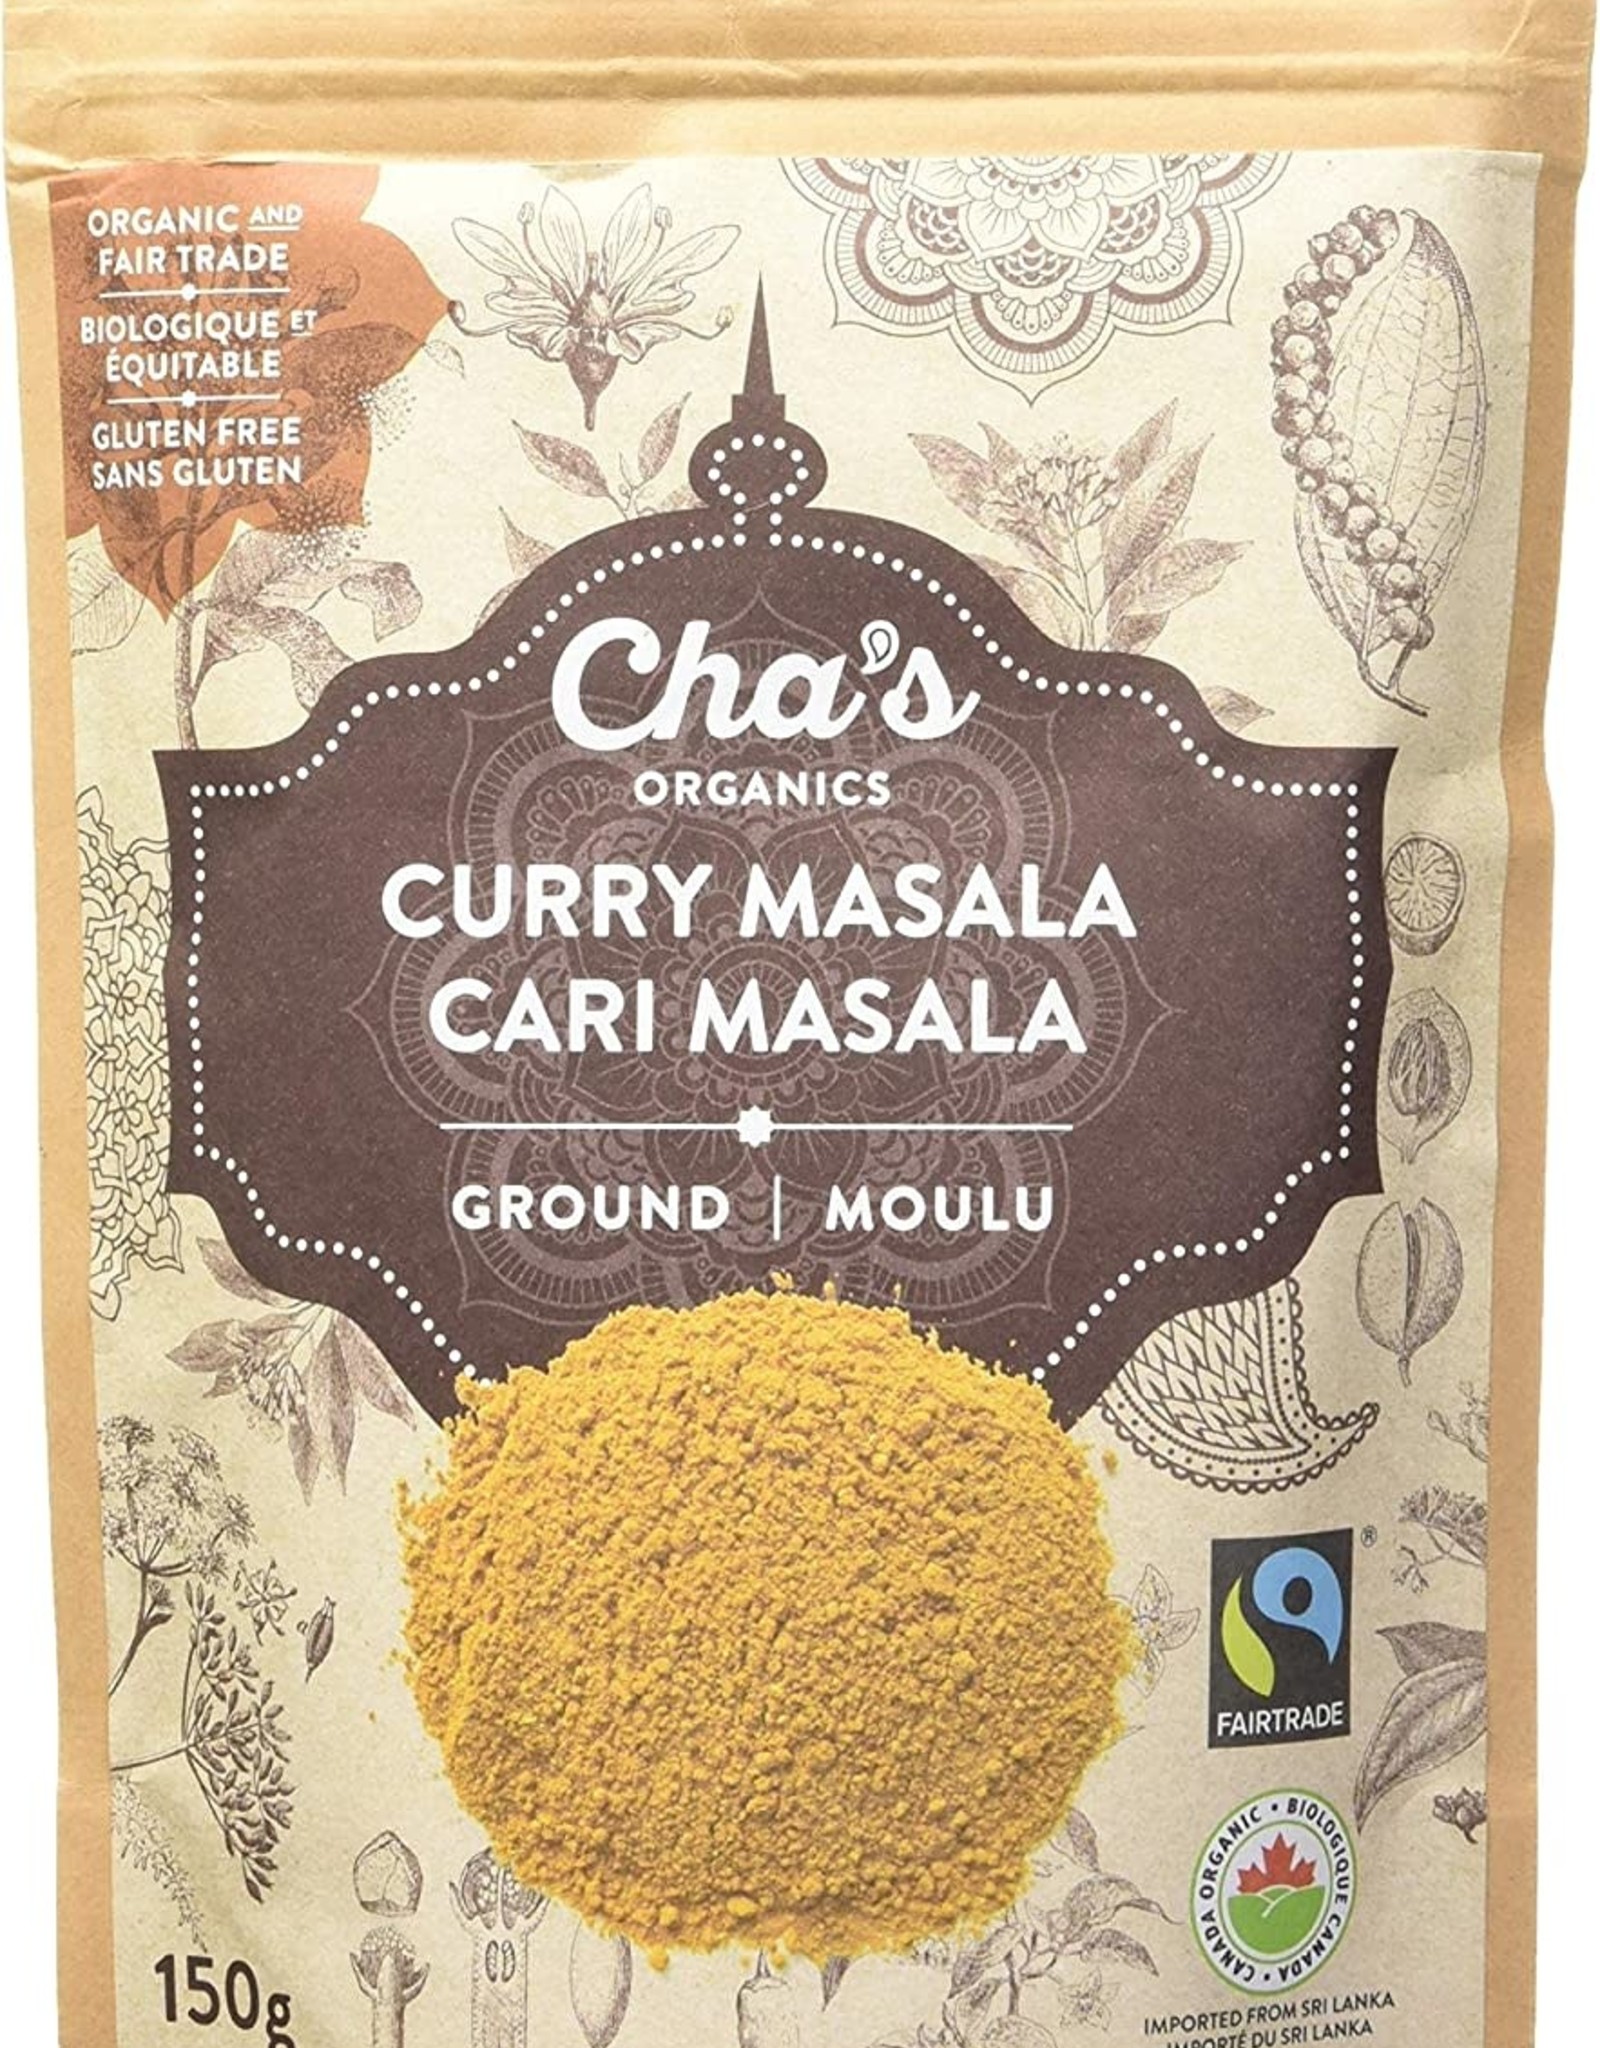 Sri Lanka Cha's Curry Masala 150g